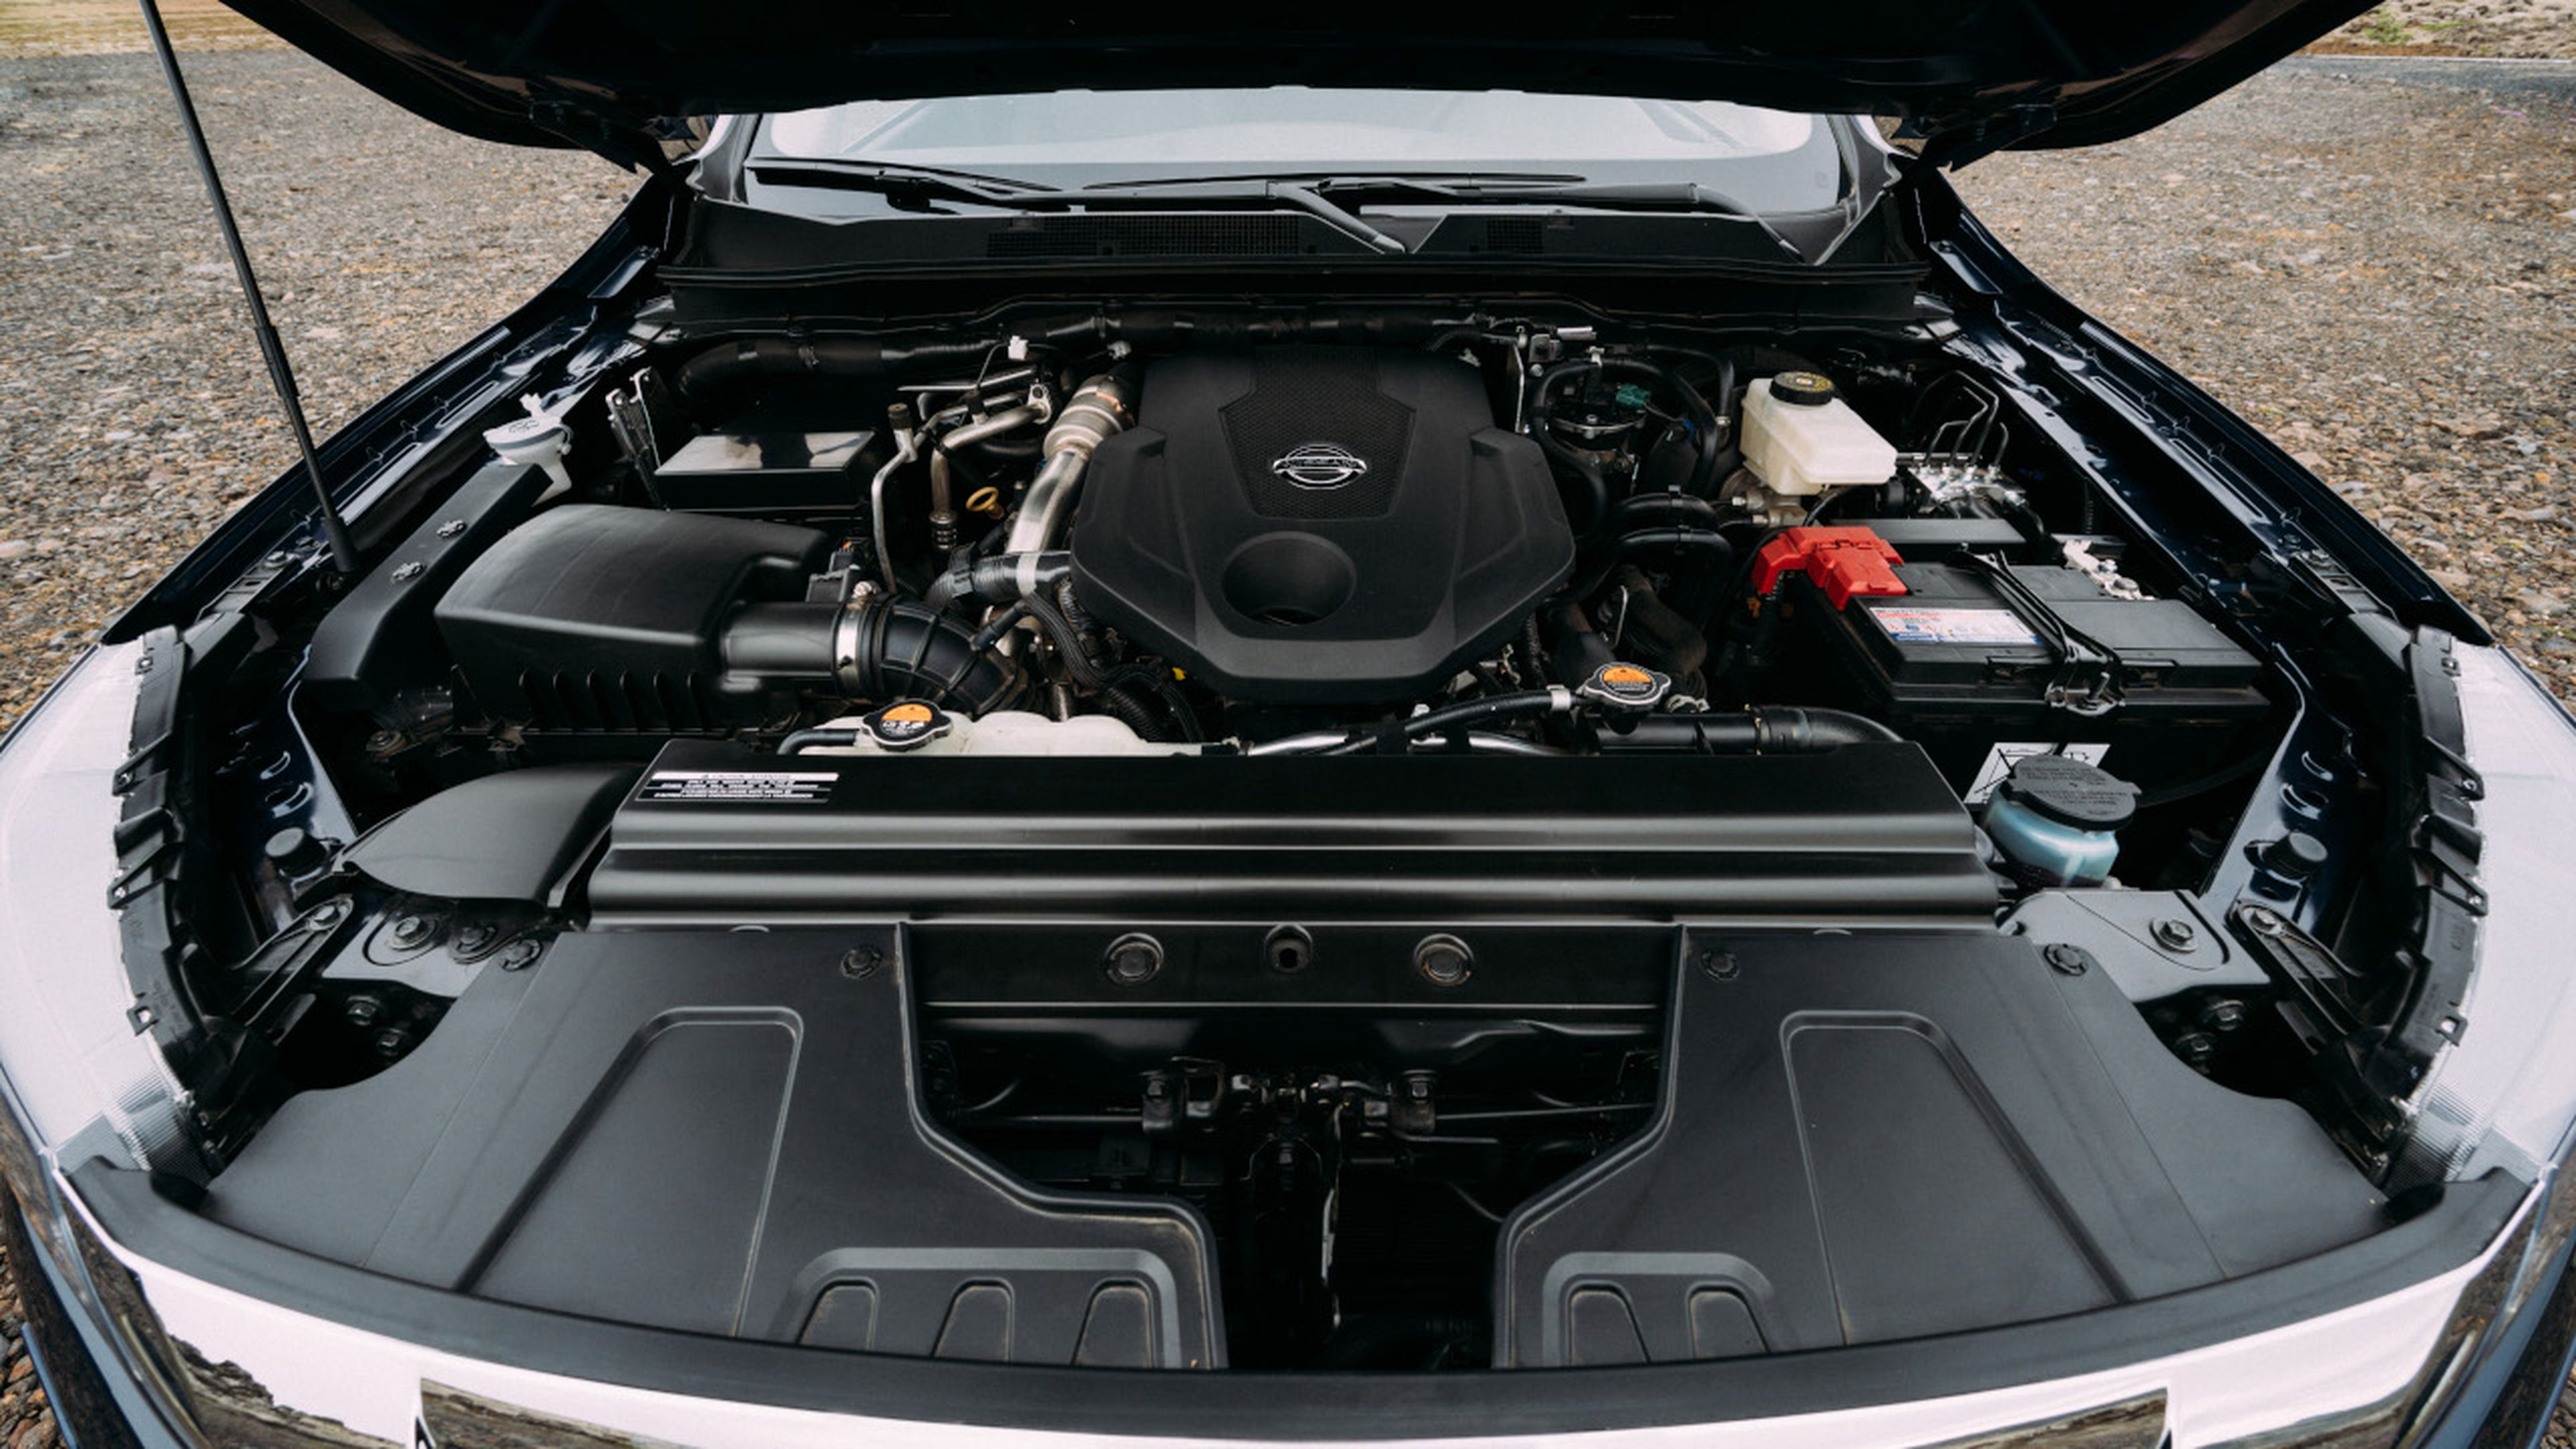 La unidad de pruebas del Nissan Navara 2019 montaba el motor 2.3 dCi de 190 CV.